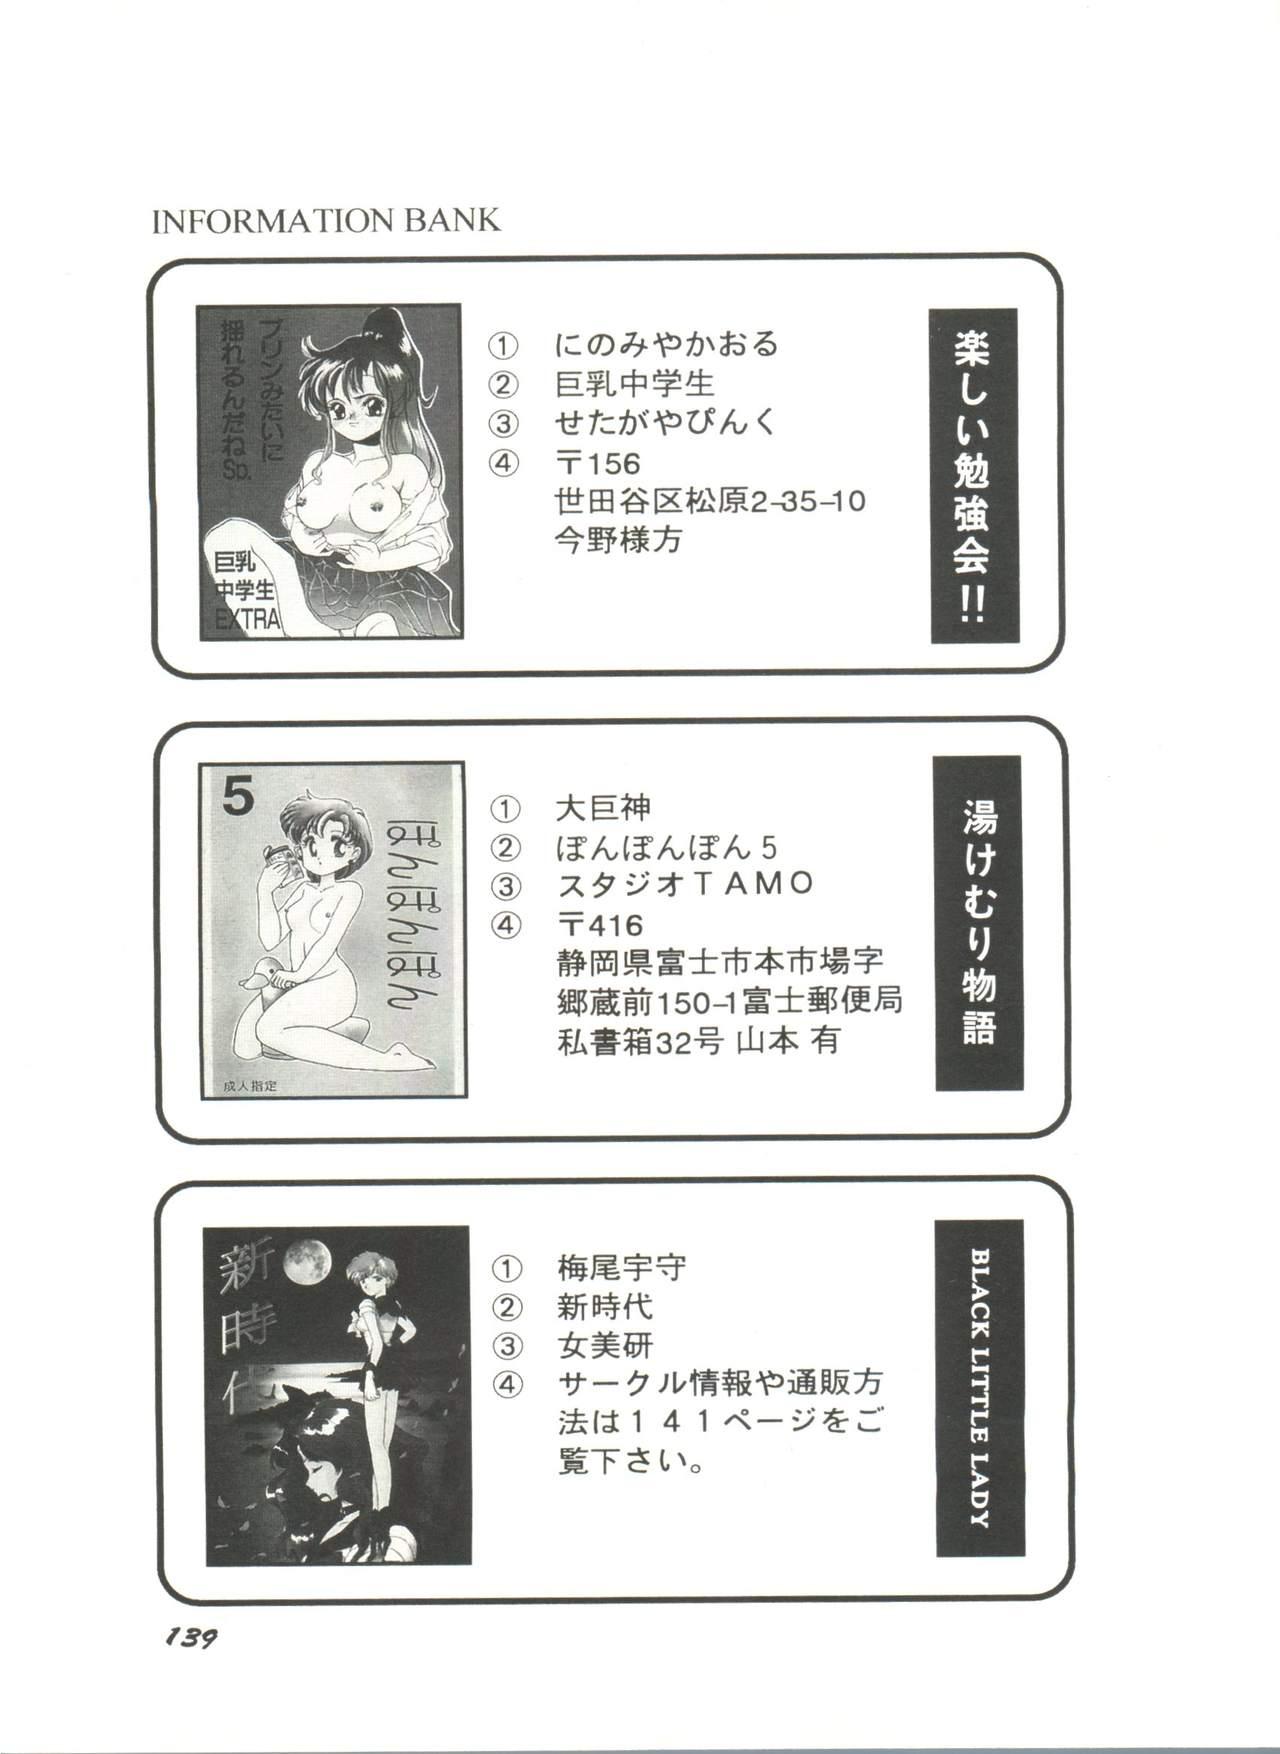 Bishoujo Doujinshi Anthology 5 - Moon Paradise 3 Tsuki no Rakuen 140